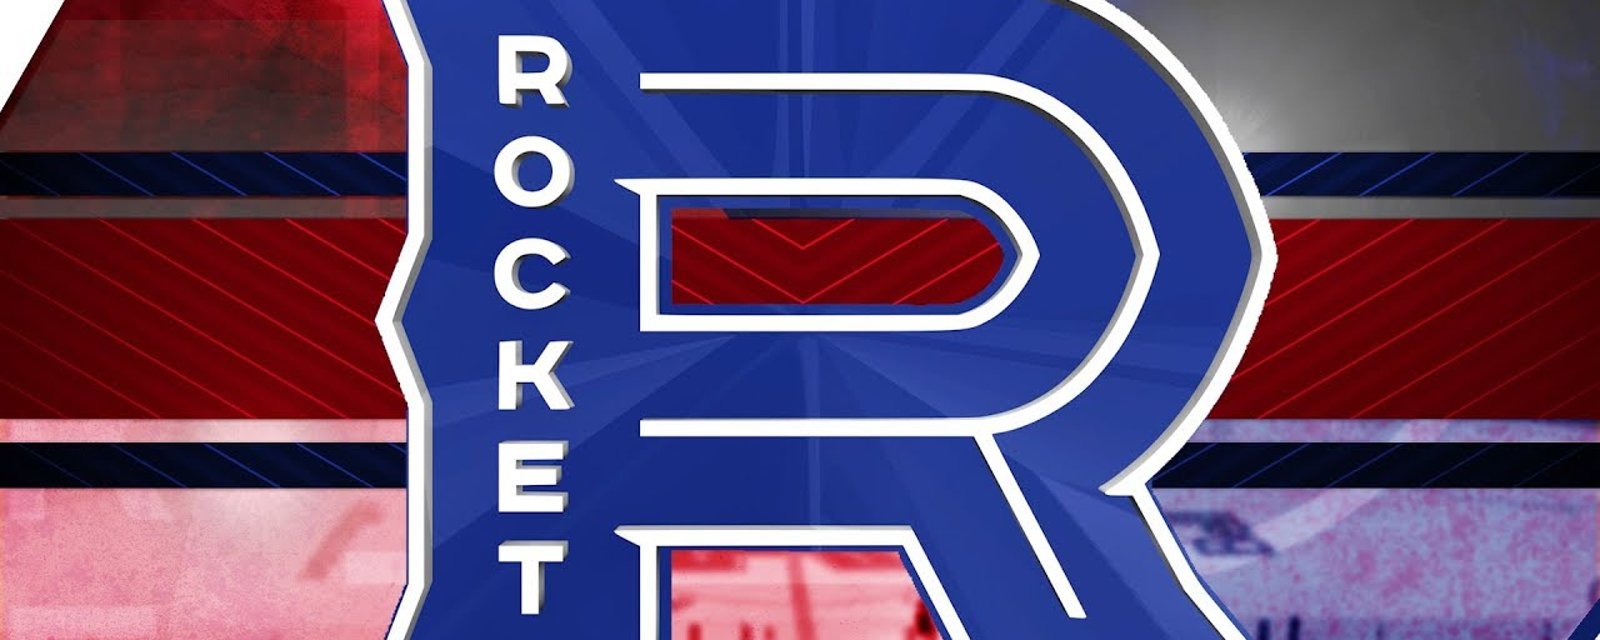 Saison terminée pour un attaquant du Rocket